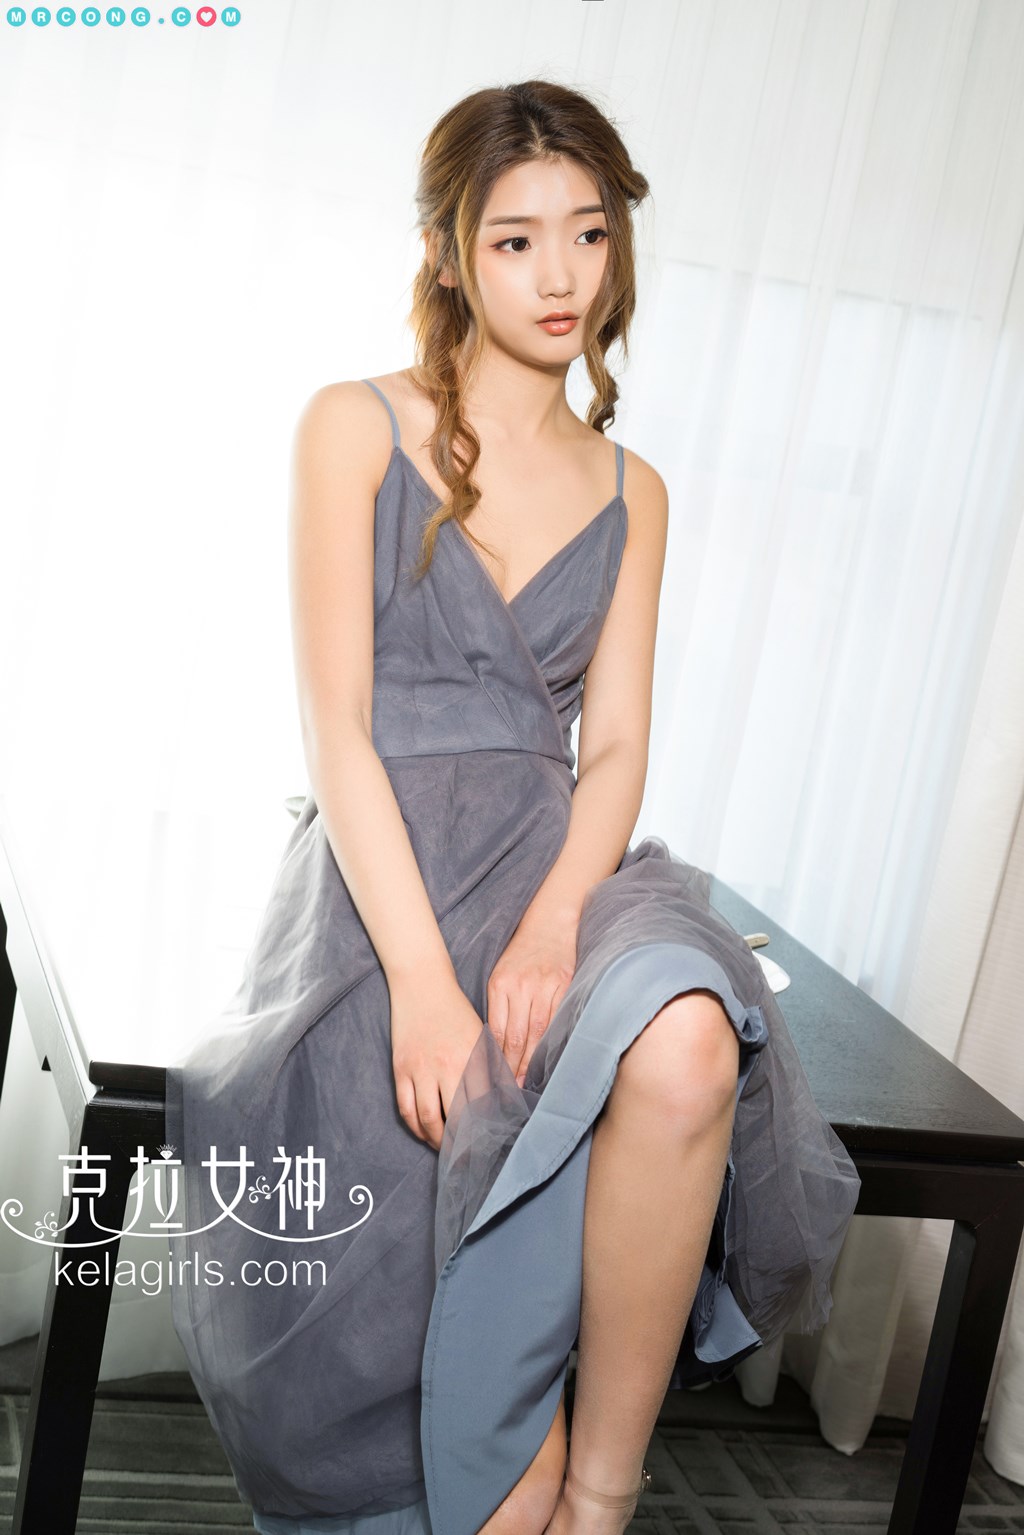 KelaGirls 2018-03-21: Model Yao Yao (瑶瑶) (26 pictures)